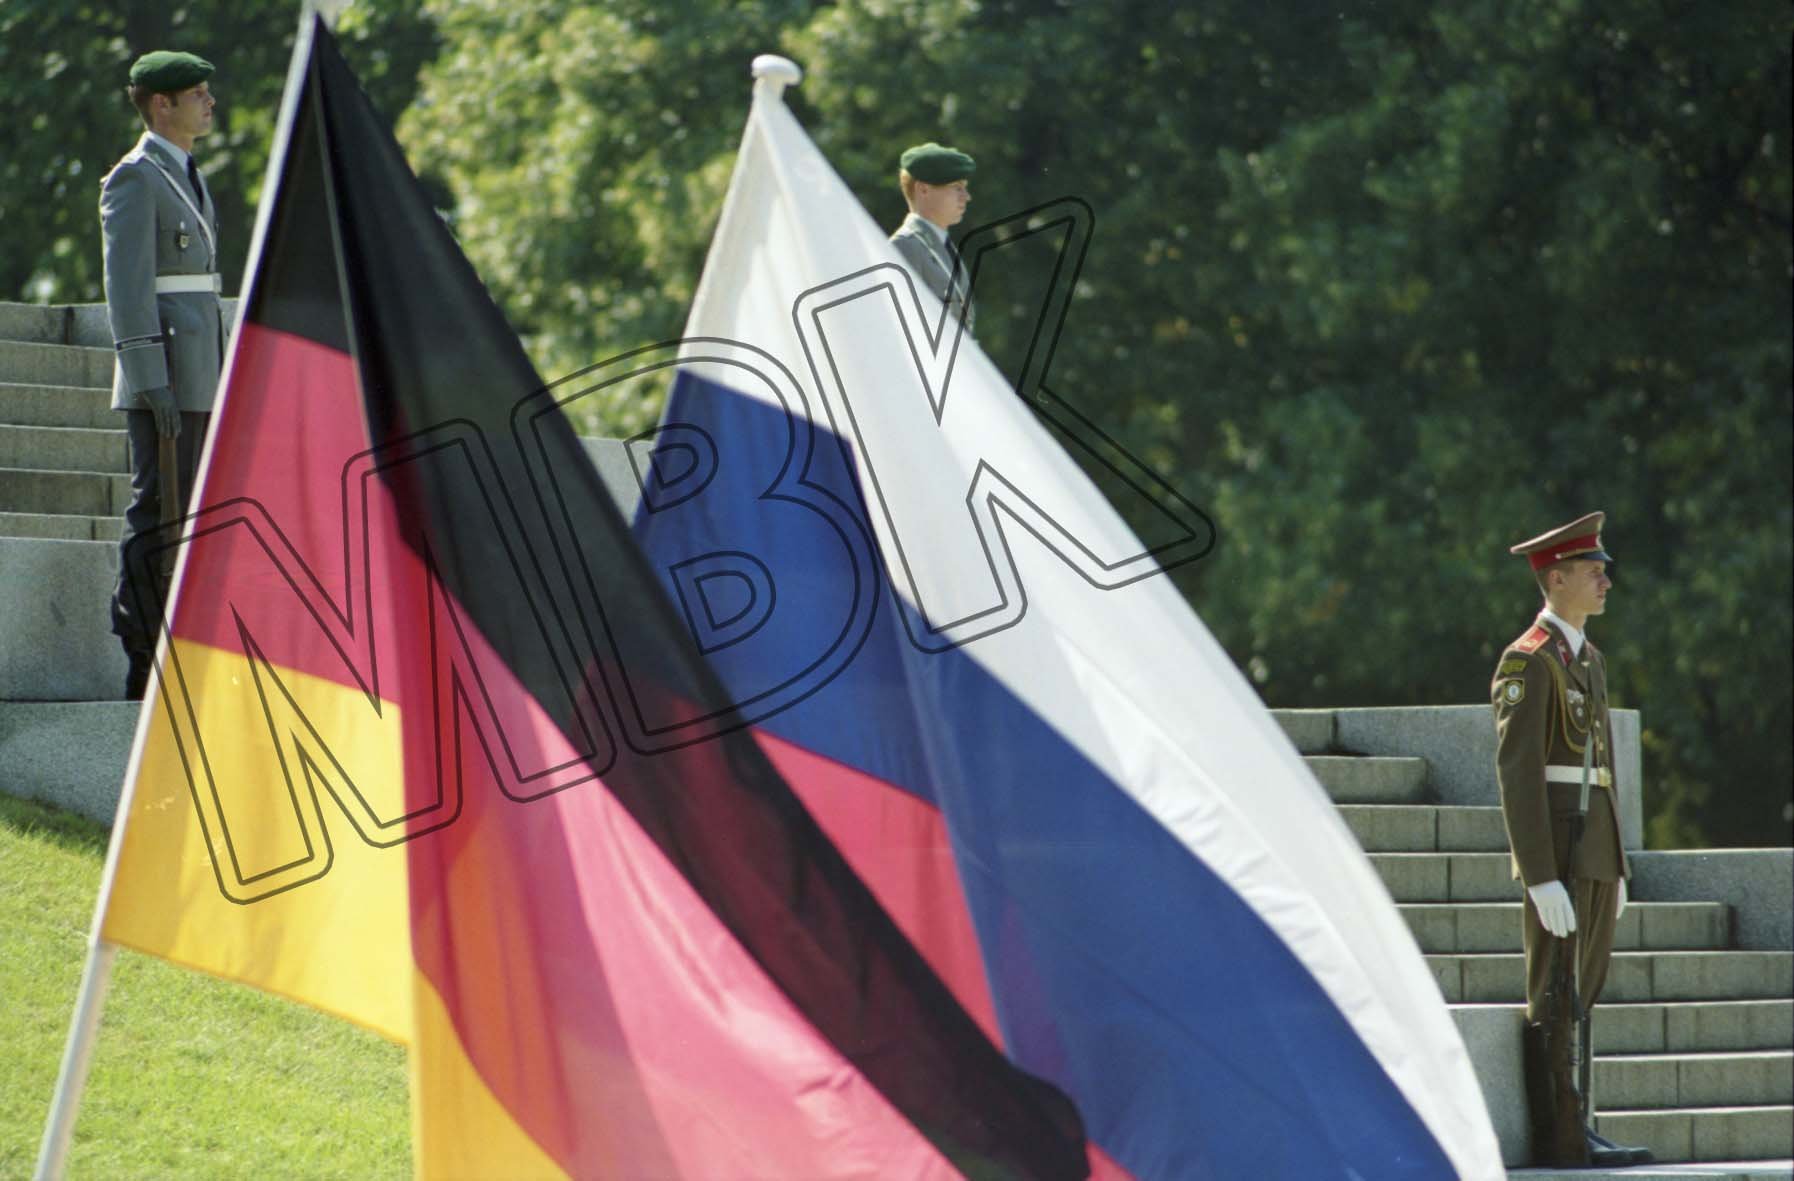 Fotografie: Verabschiedung der WGT am sowjetischen Ehrenmal im Treptower Park, Berlin, 31. August 1994 (Museum Berlin-Karlshorst RR-P)